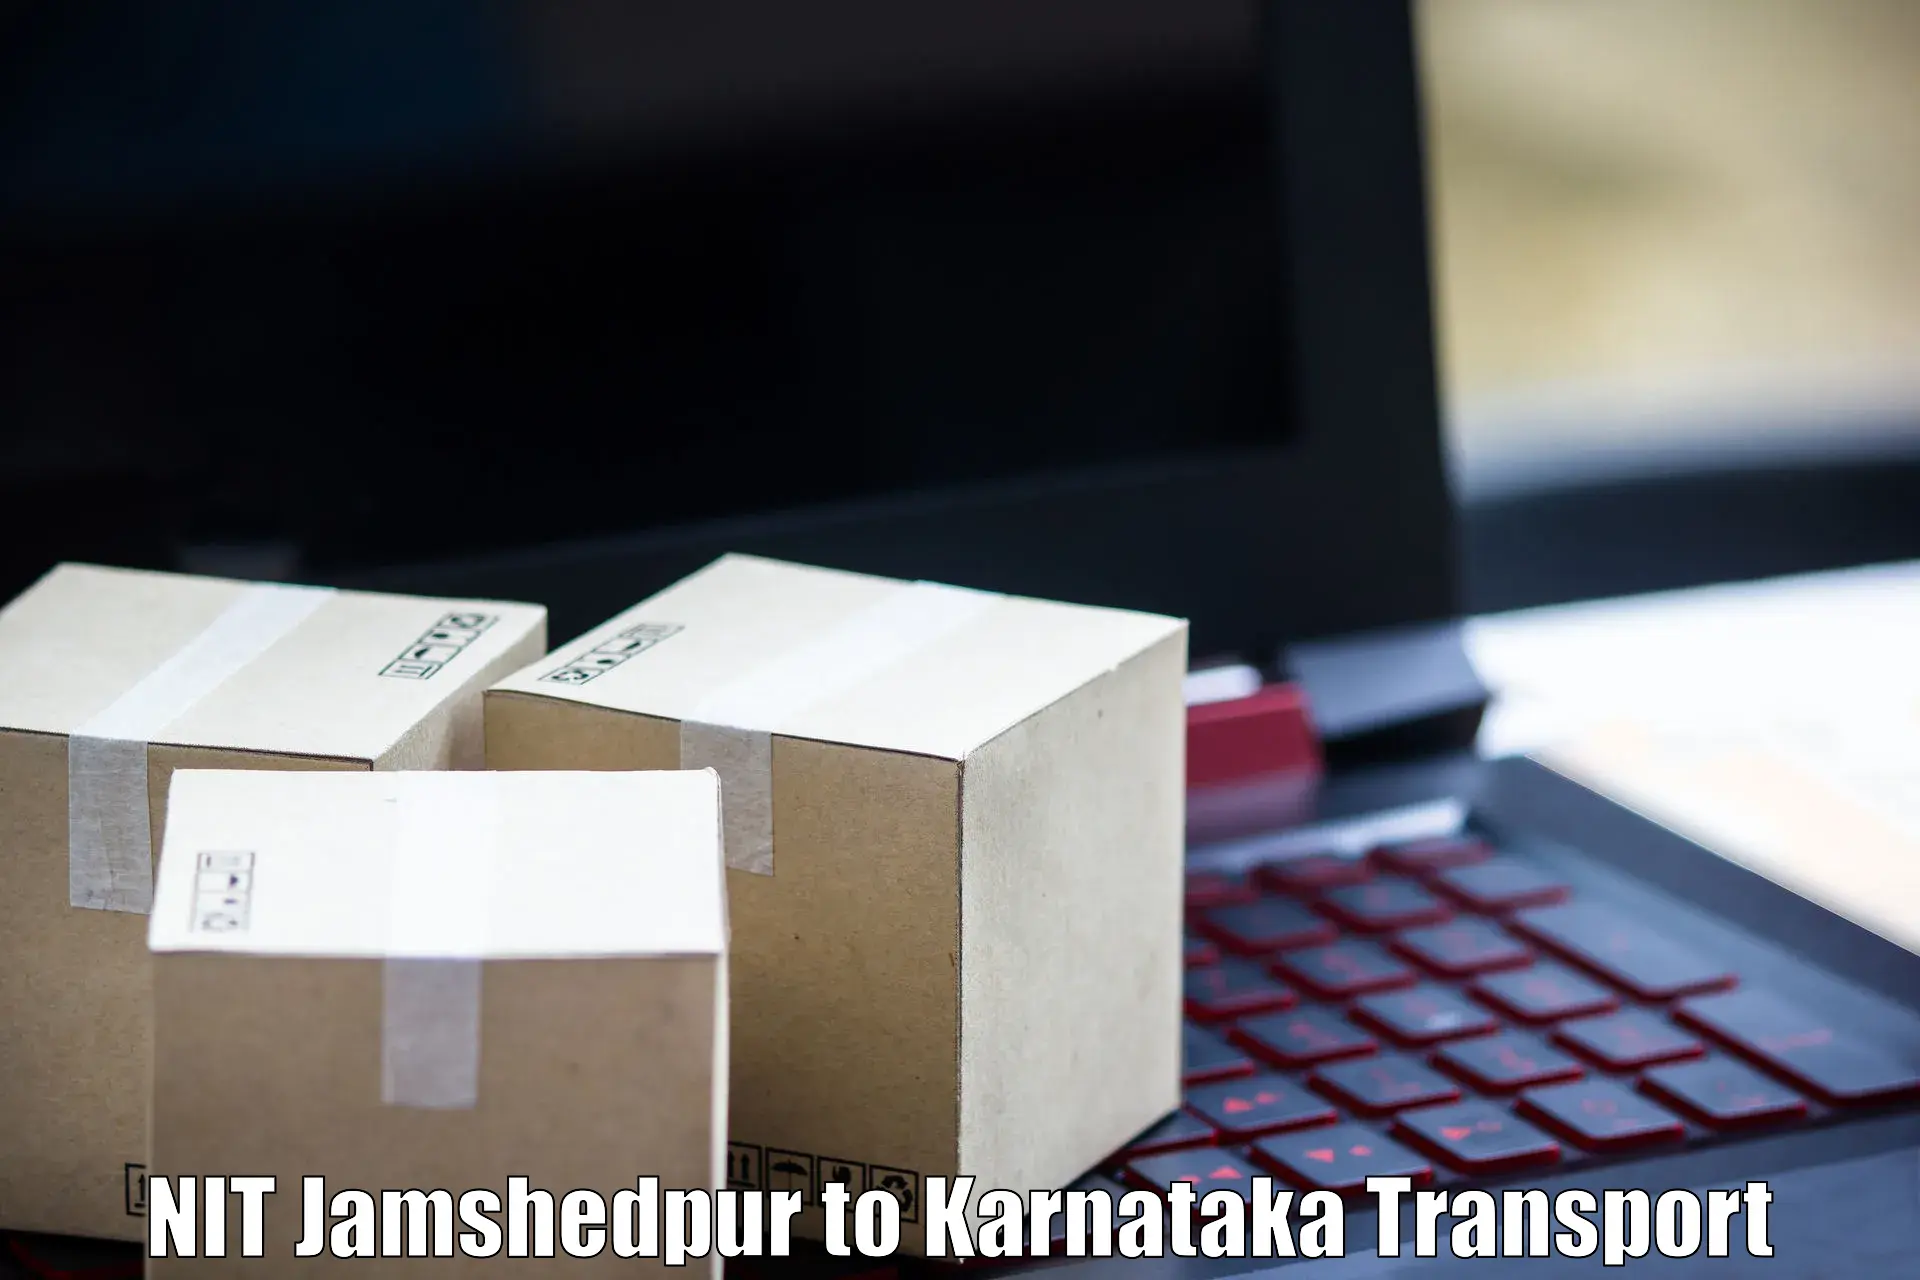 Daily parcel service transport NIT Jamshedpur to Chintamani Kolar